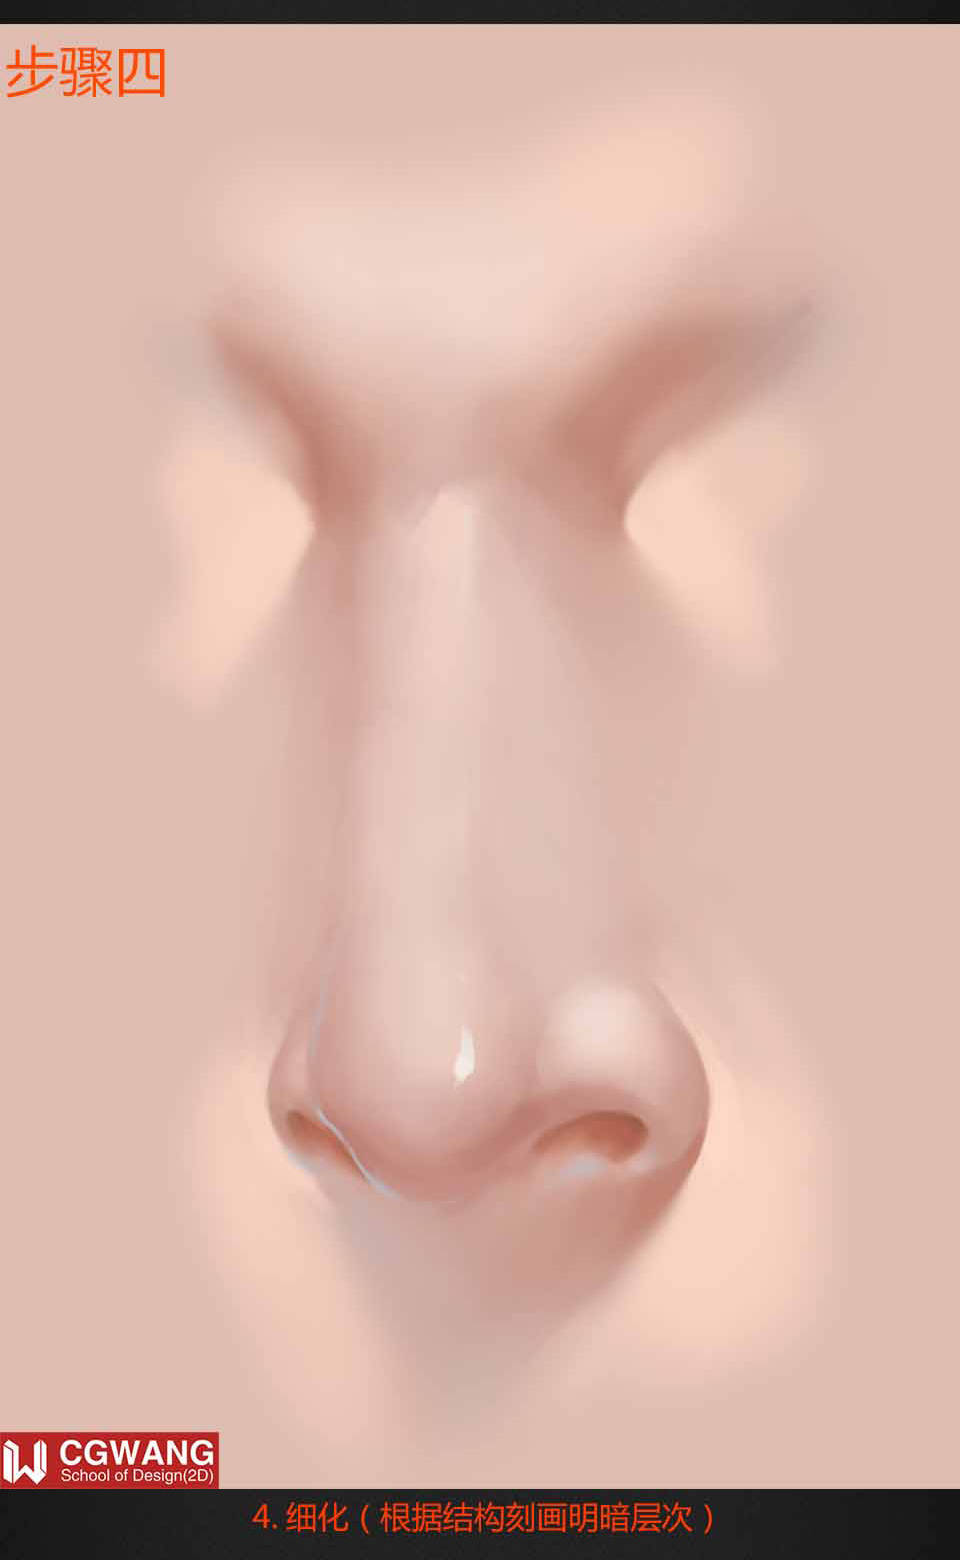 粉色的鼻子(鼻子上紫外线照呈现粉红色)